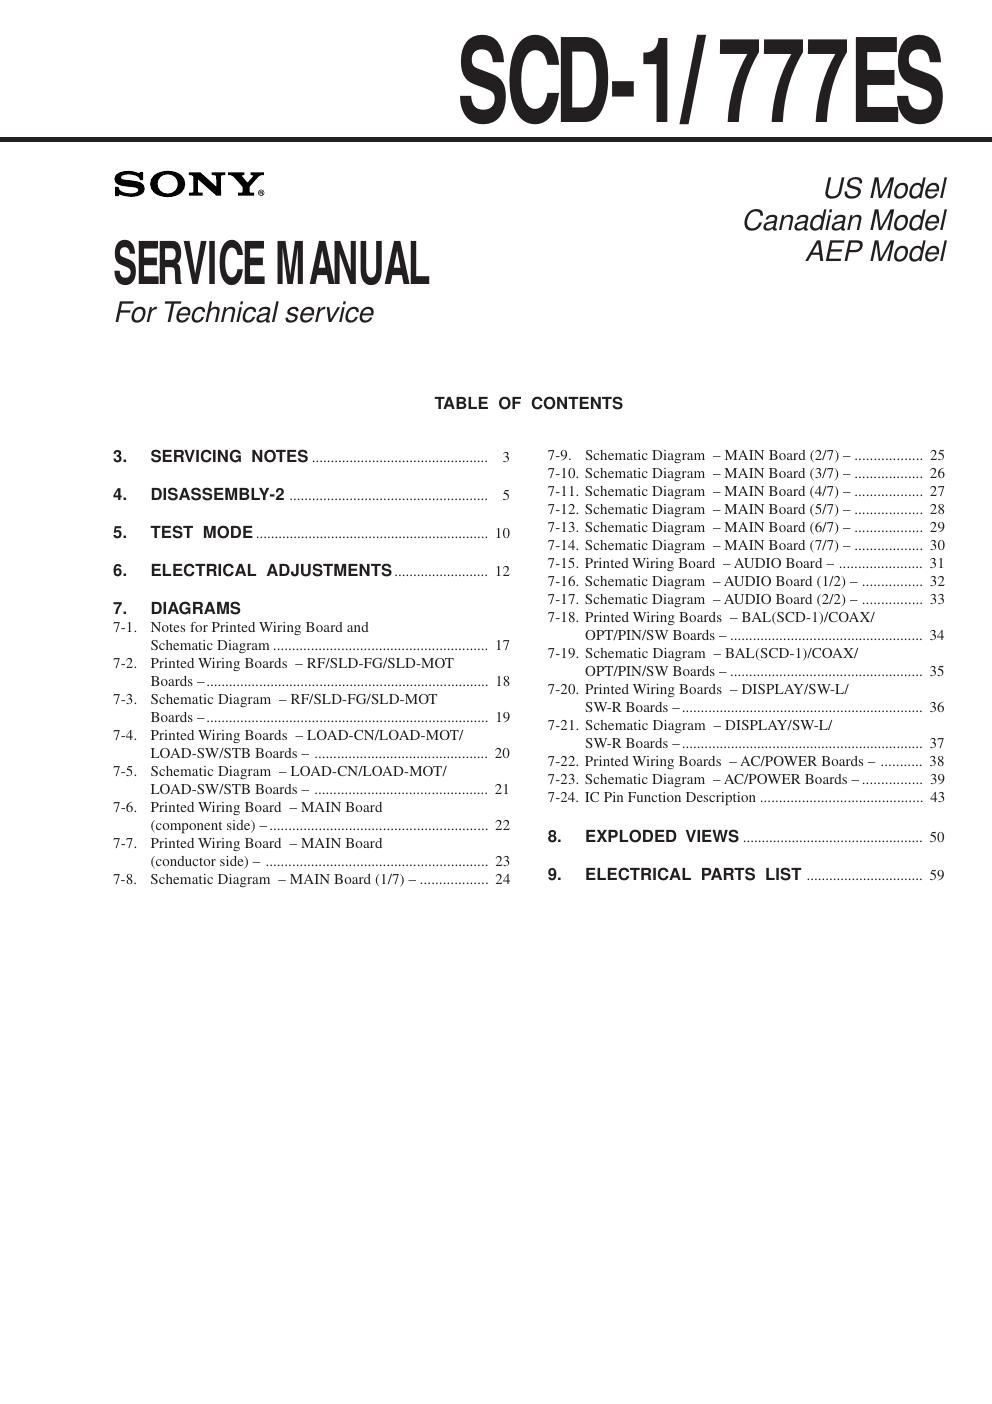 sony scd 1 777 es service manual